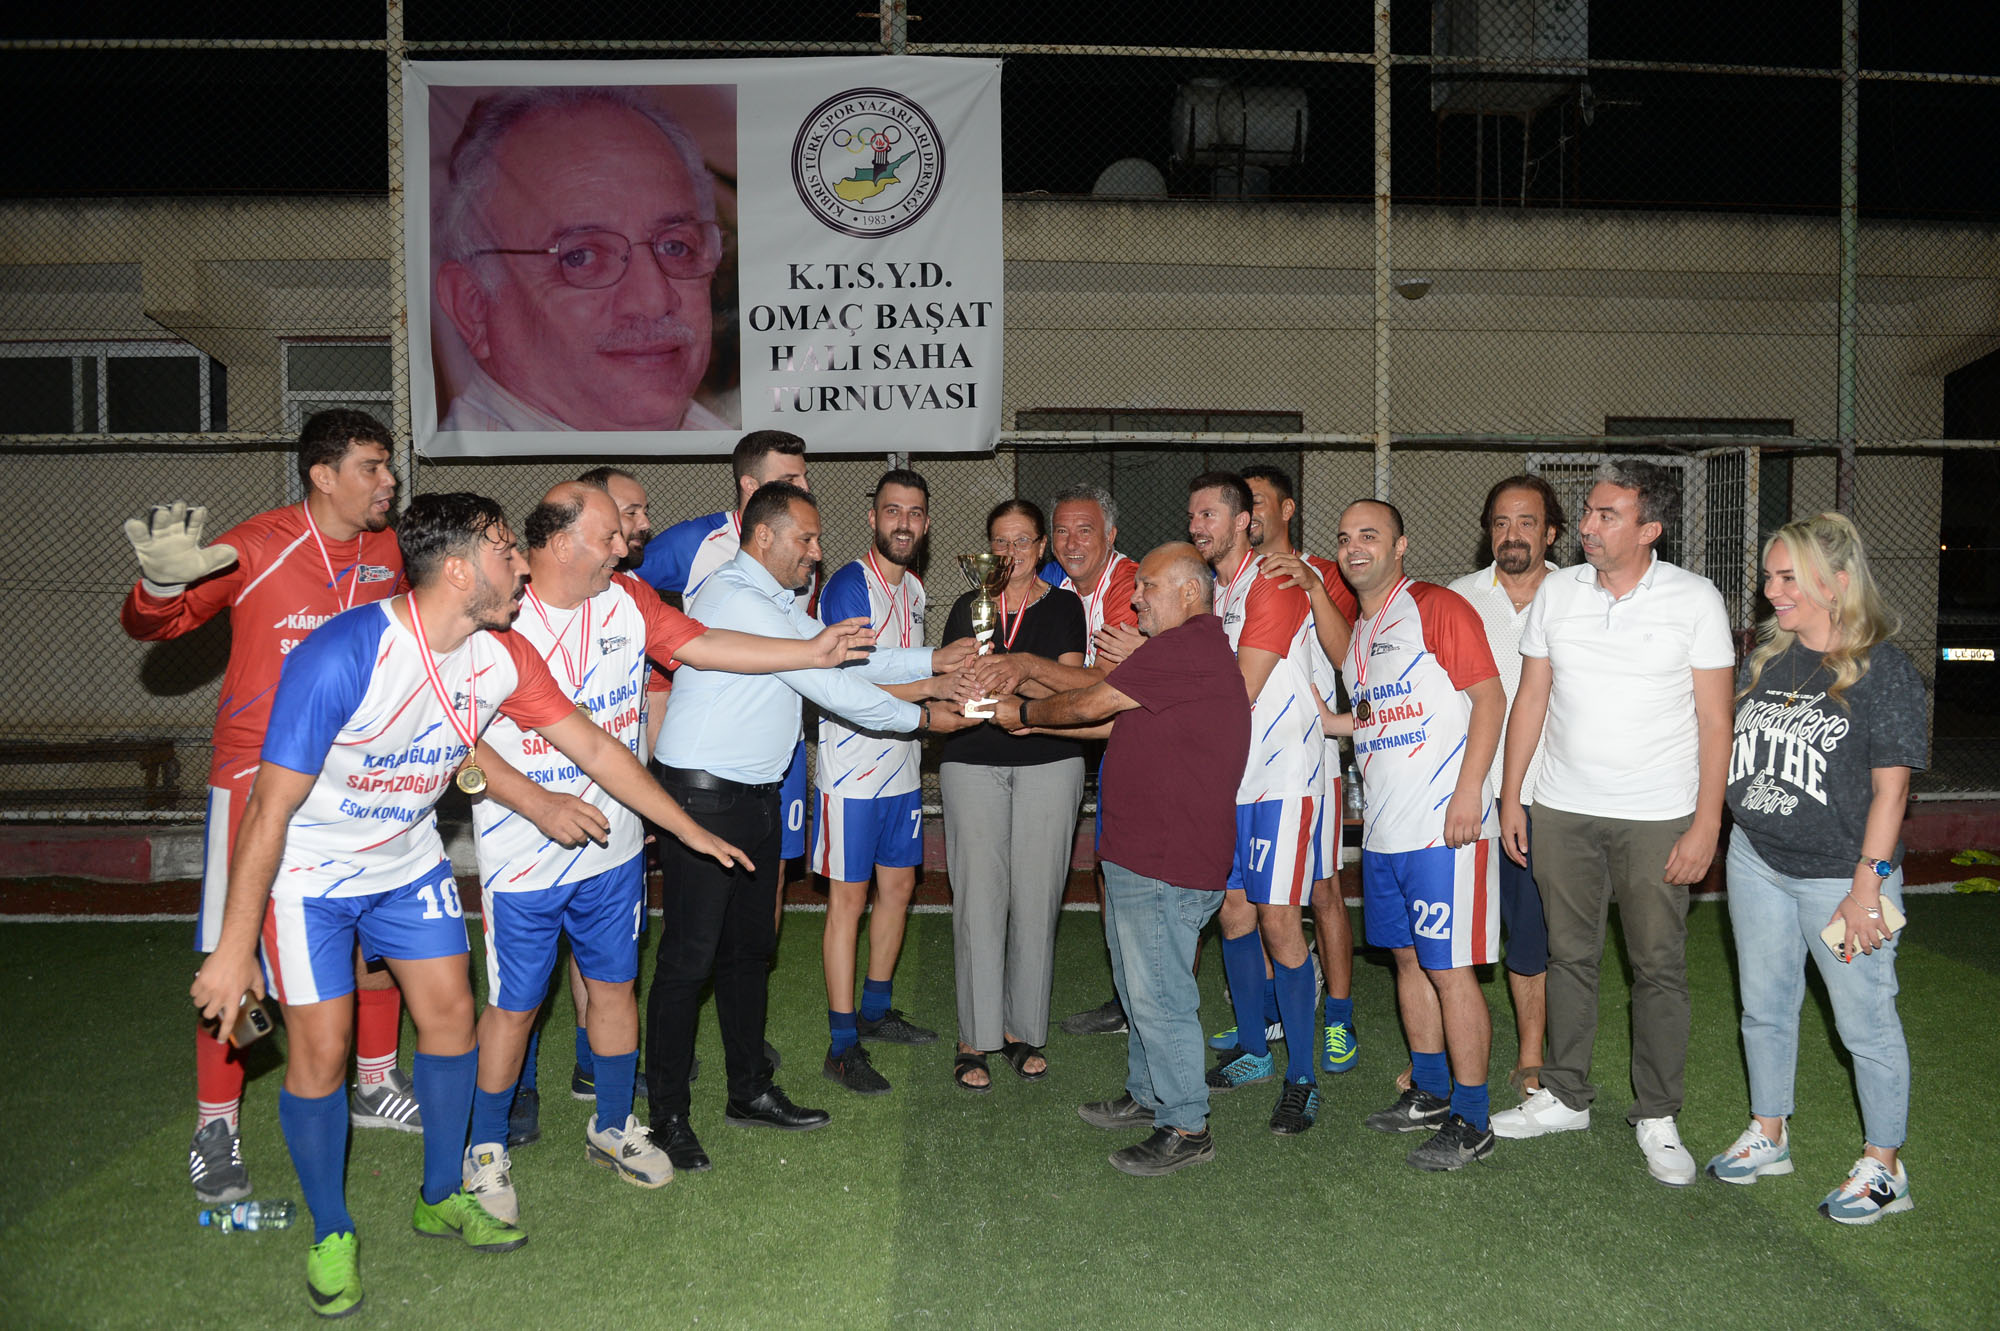 Omaç Başat Turnuvasının Şampiyonu Tribün Kıbrıs